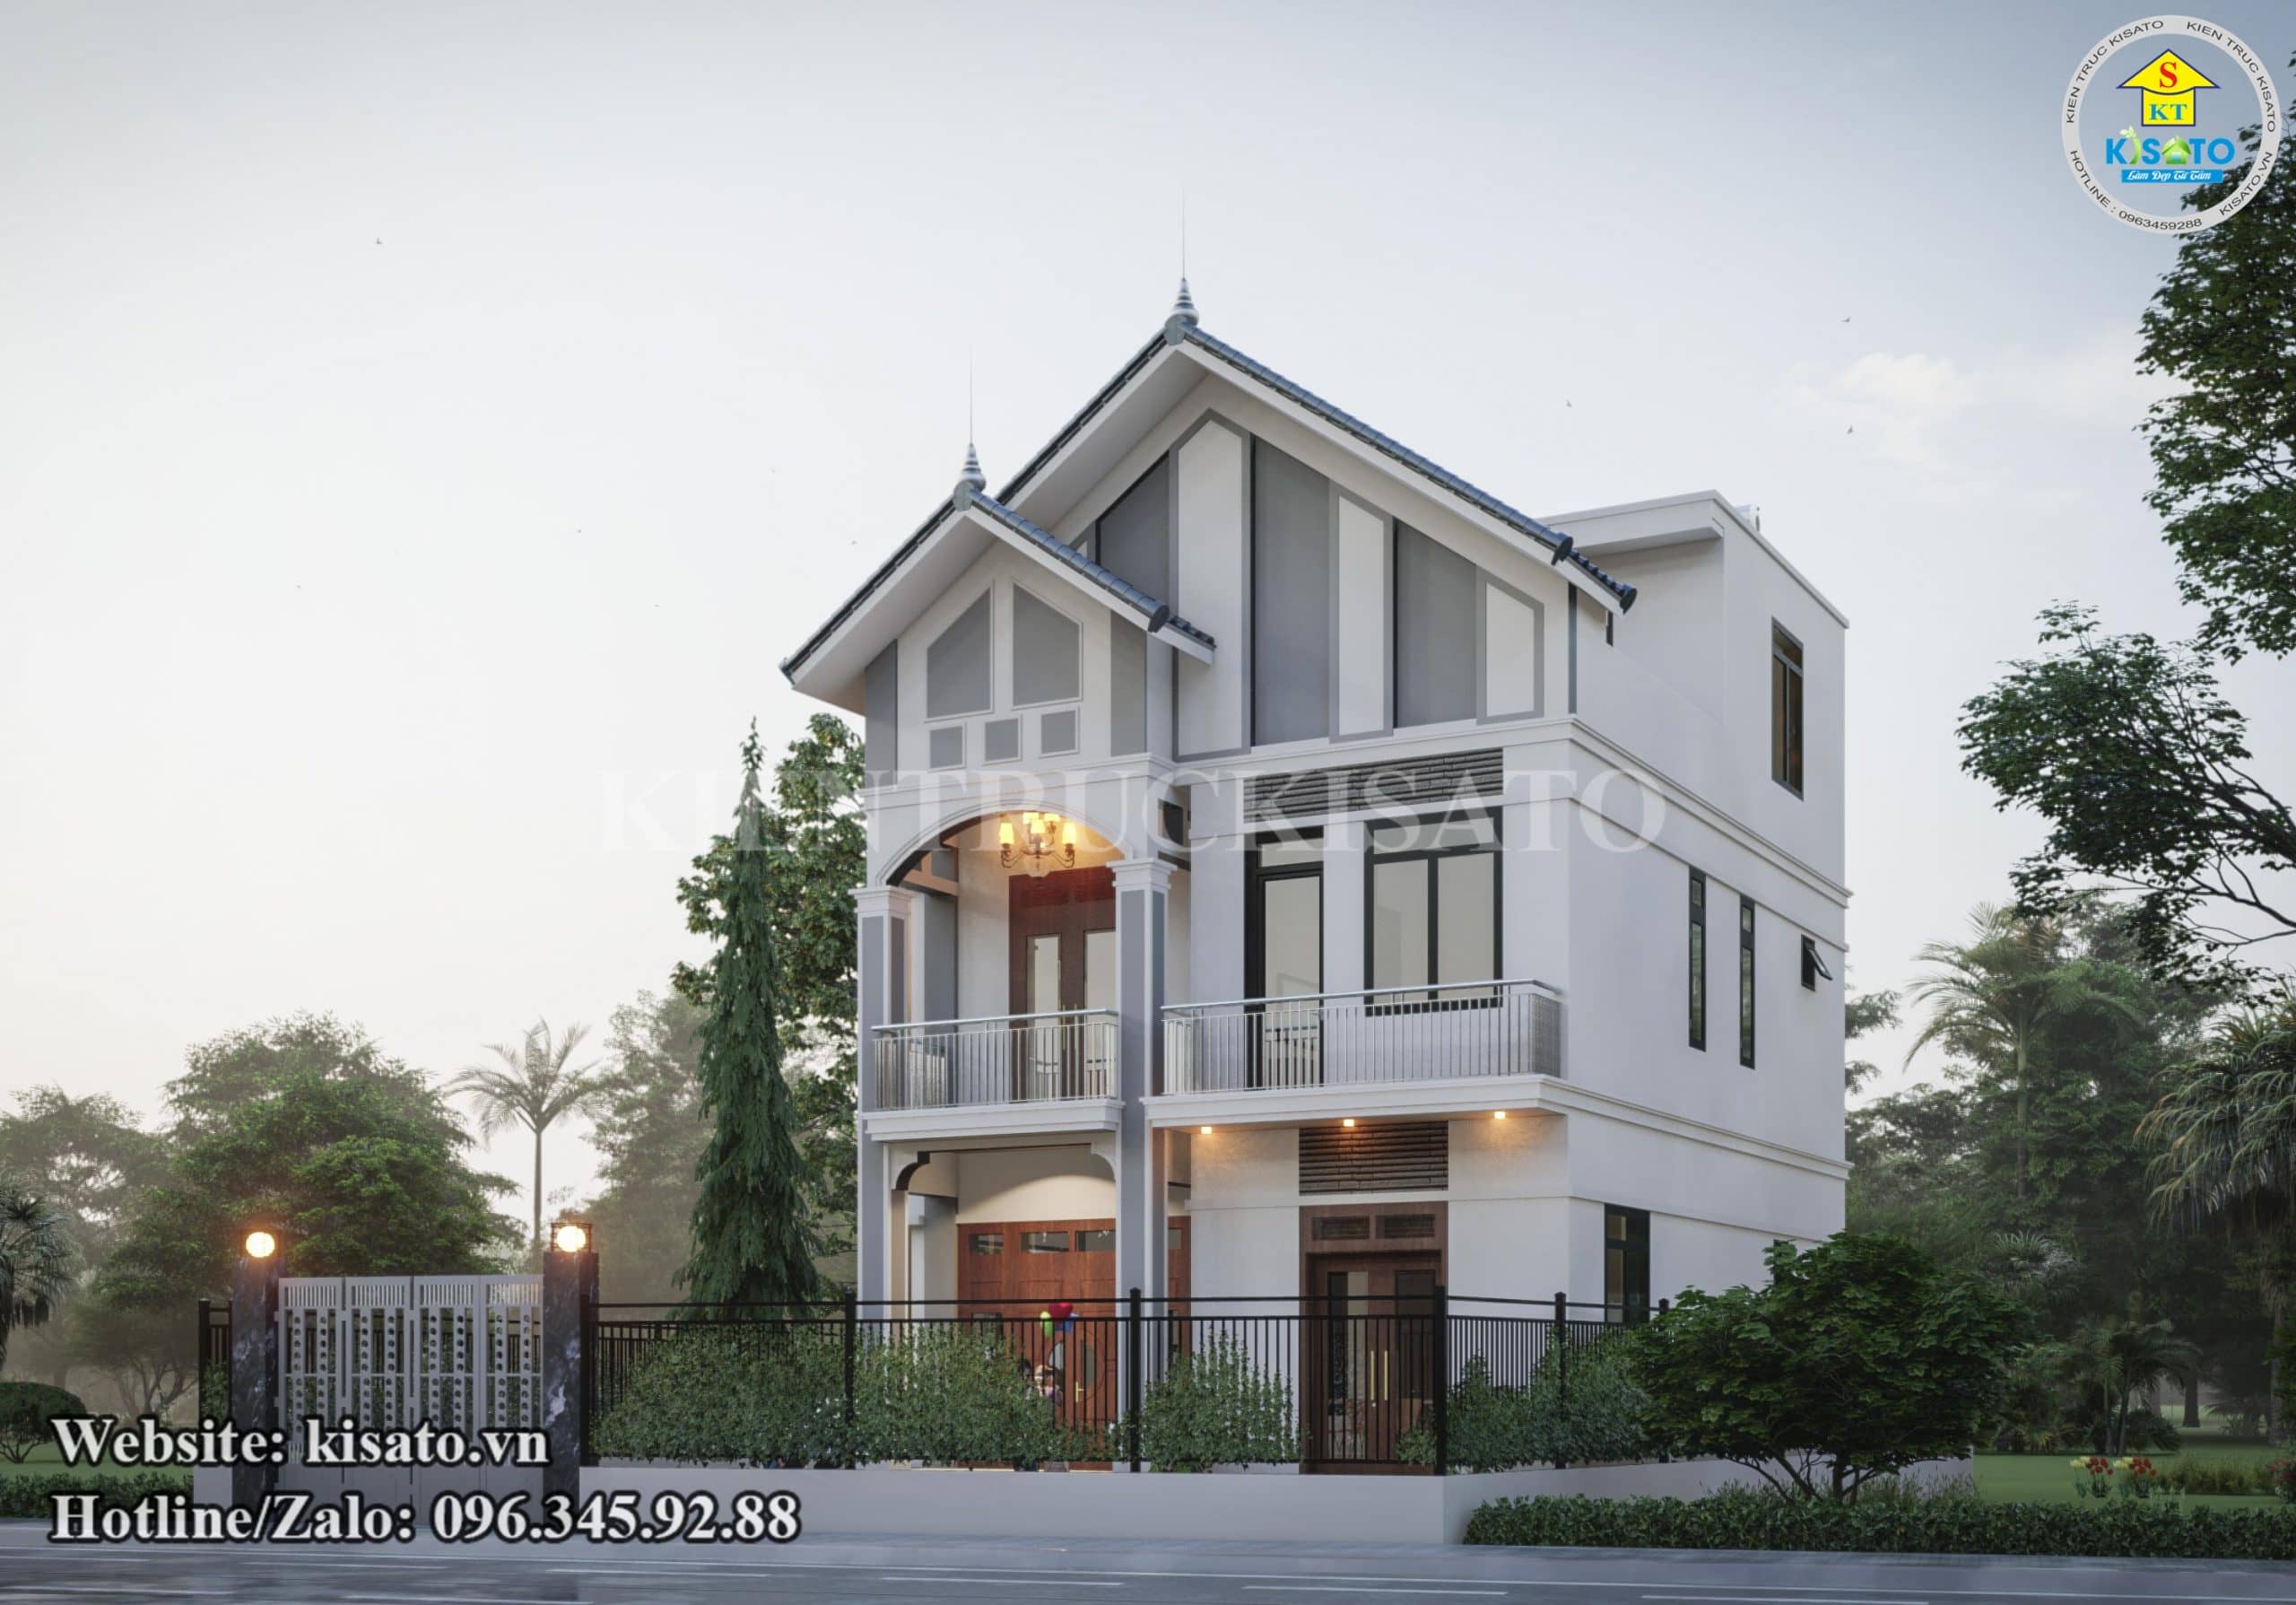 Phối cảnh 3D mẫu biệt thự 2 tầng hiện đại sang trọng tại Hà Nội 